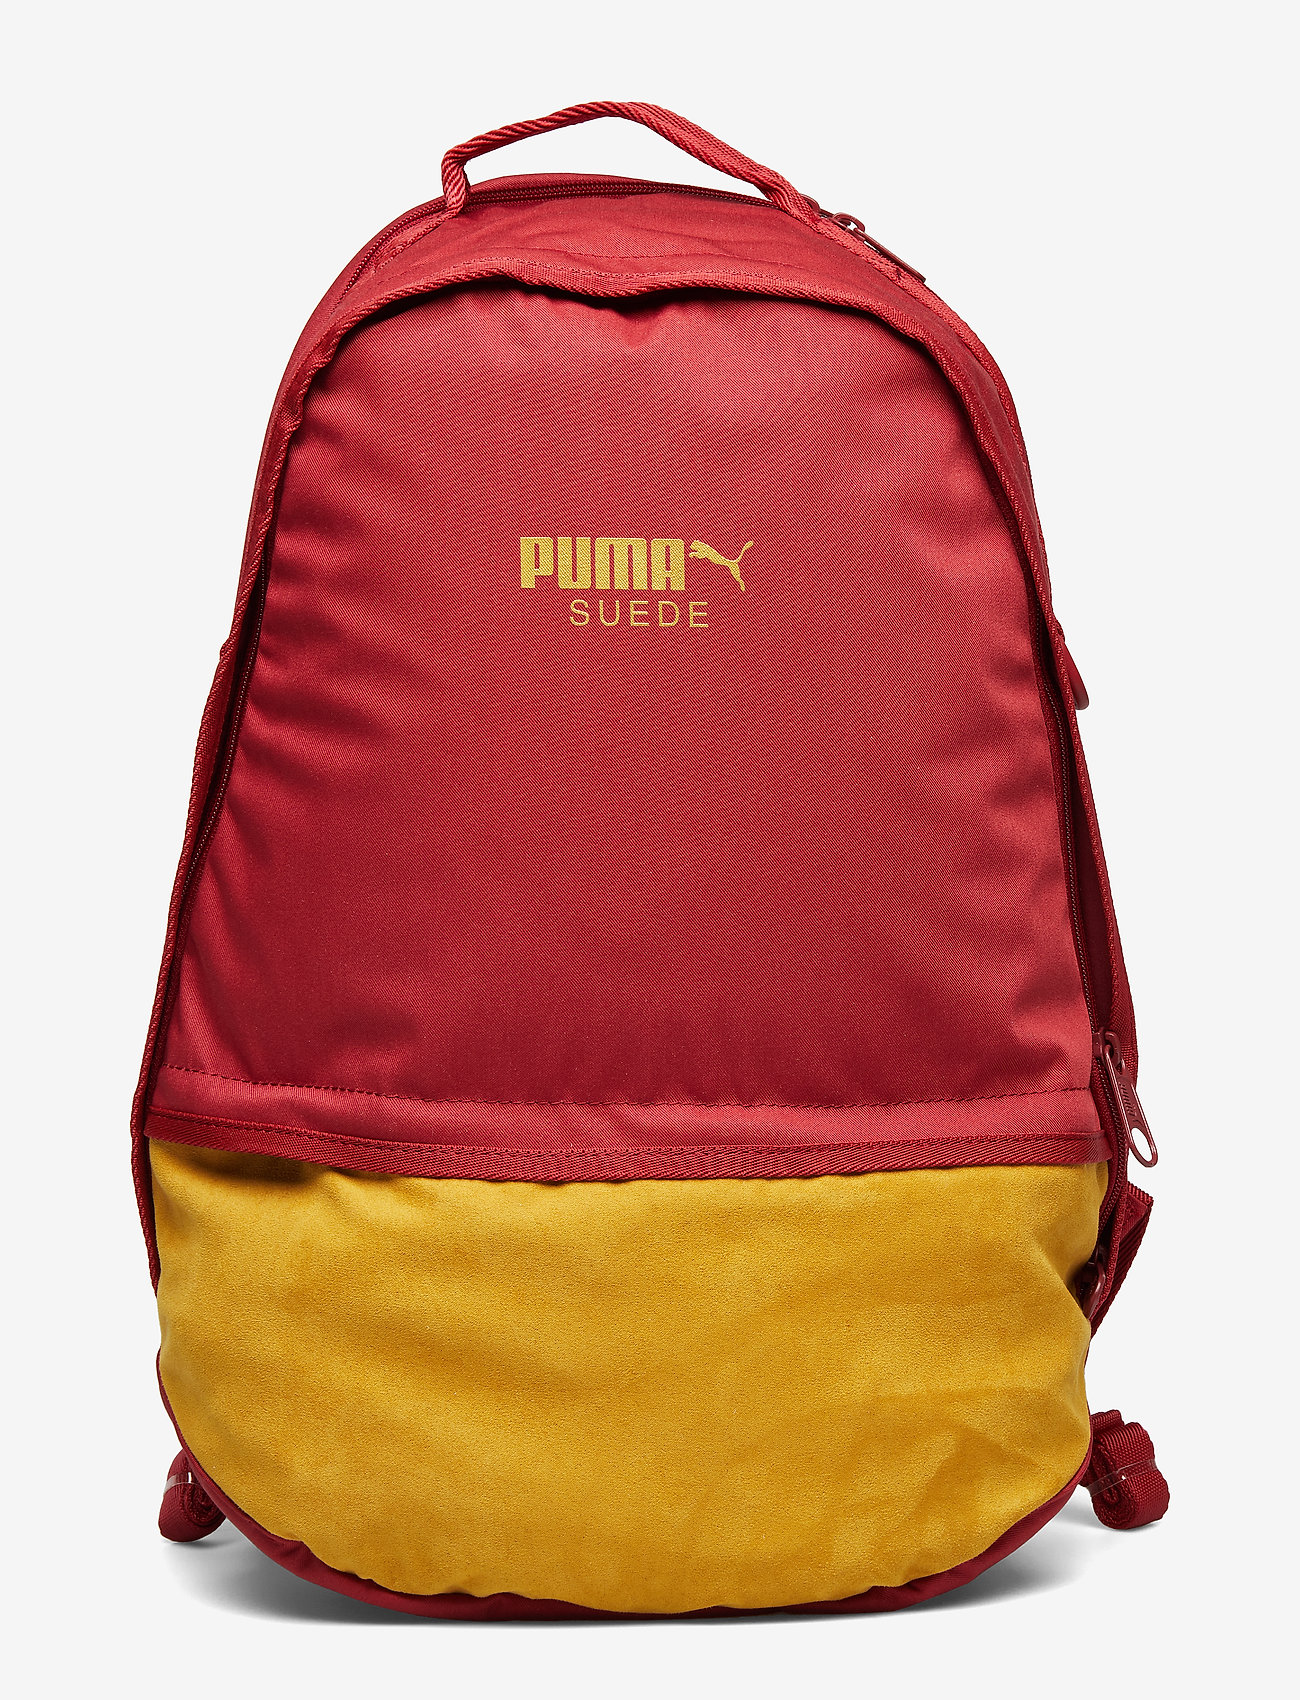 Puma Suede Backpack (Red Dahlia) (30 